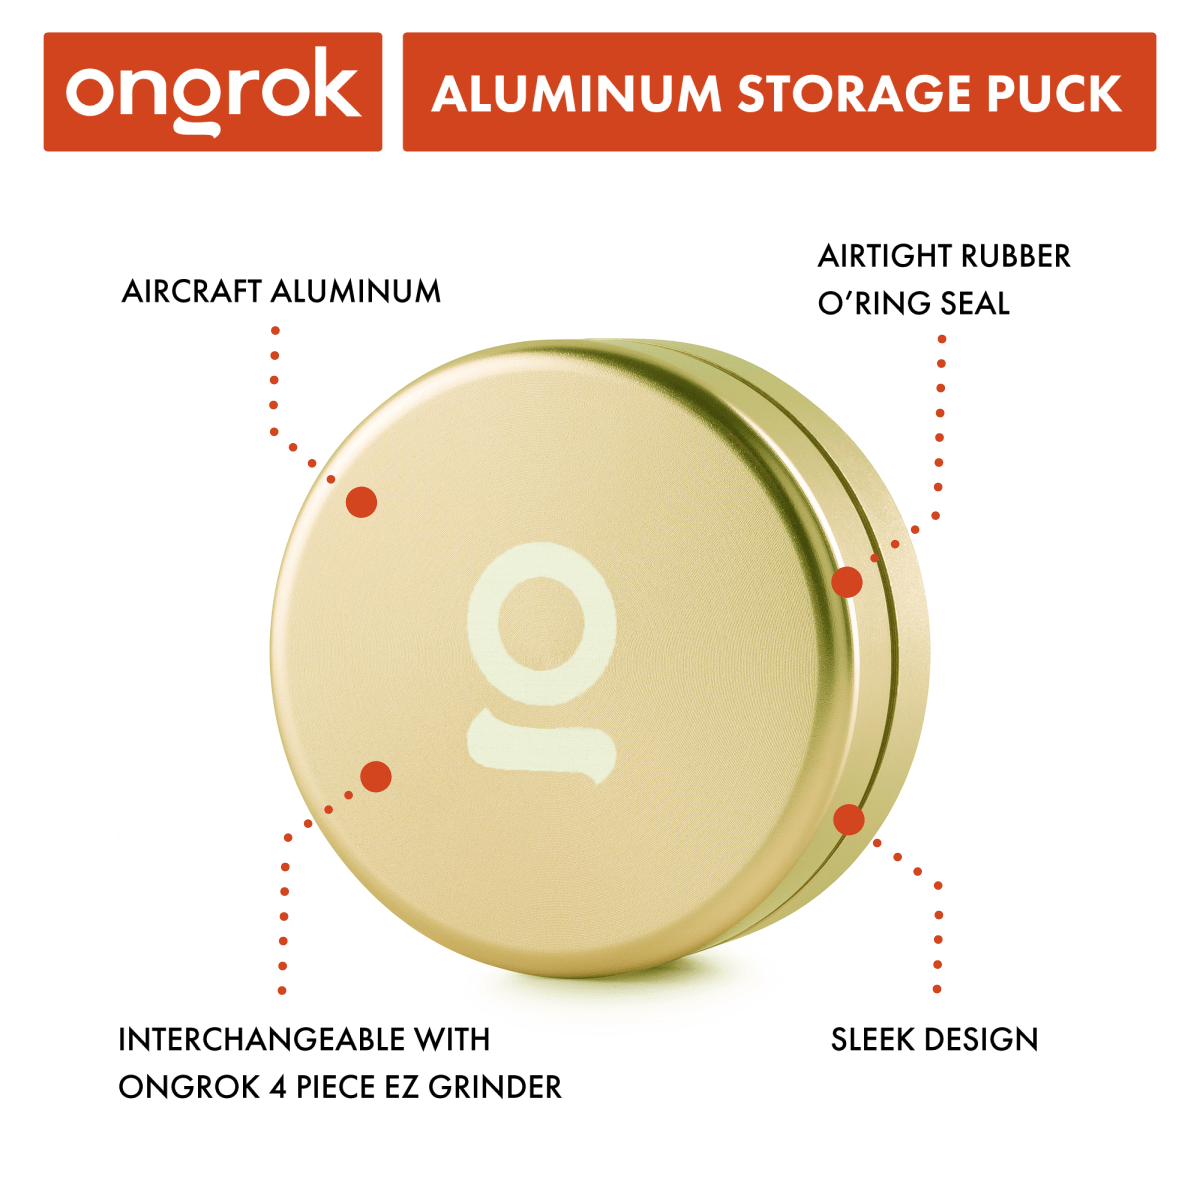 ONGROK Aluminium Storage Puck